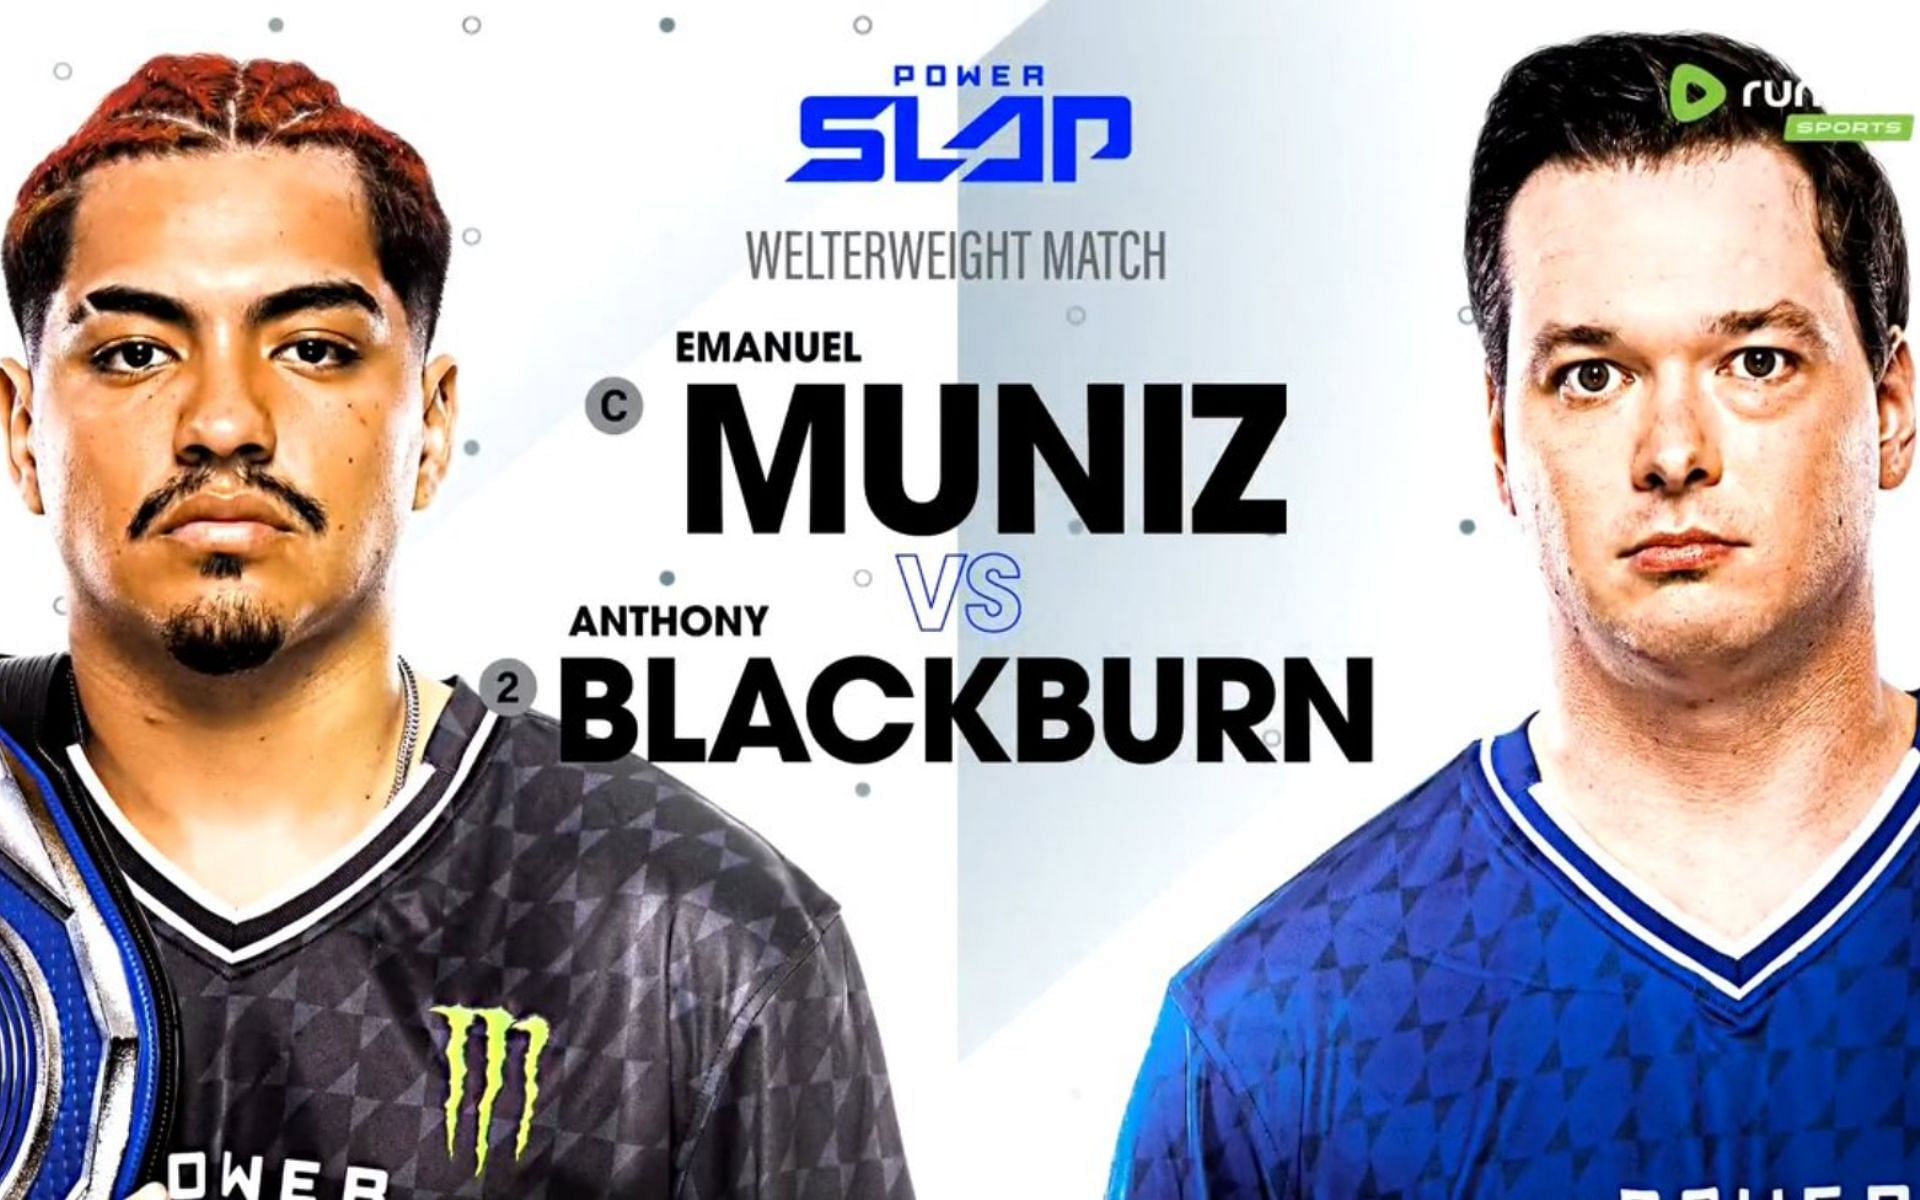 Emanuel Muniz and Anthony Blackburn traded slaps in the co-main event of Power Slap 8 on June 28